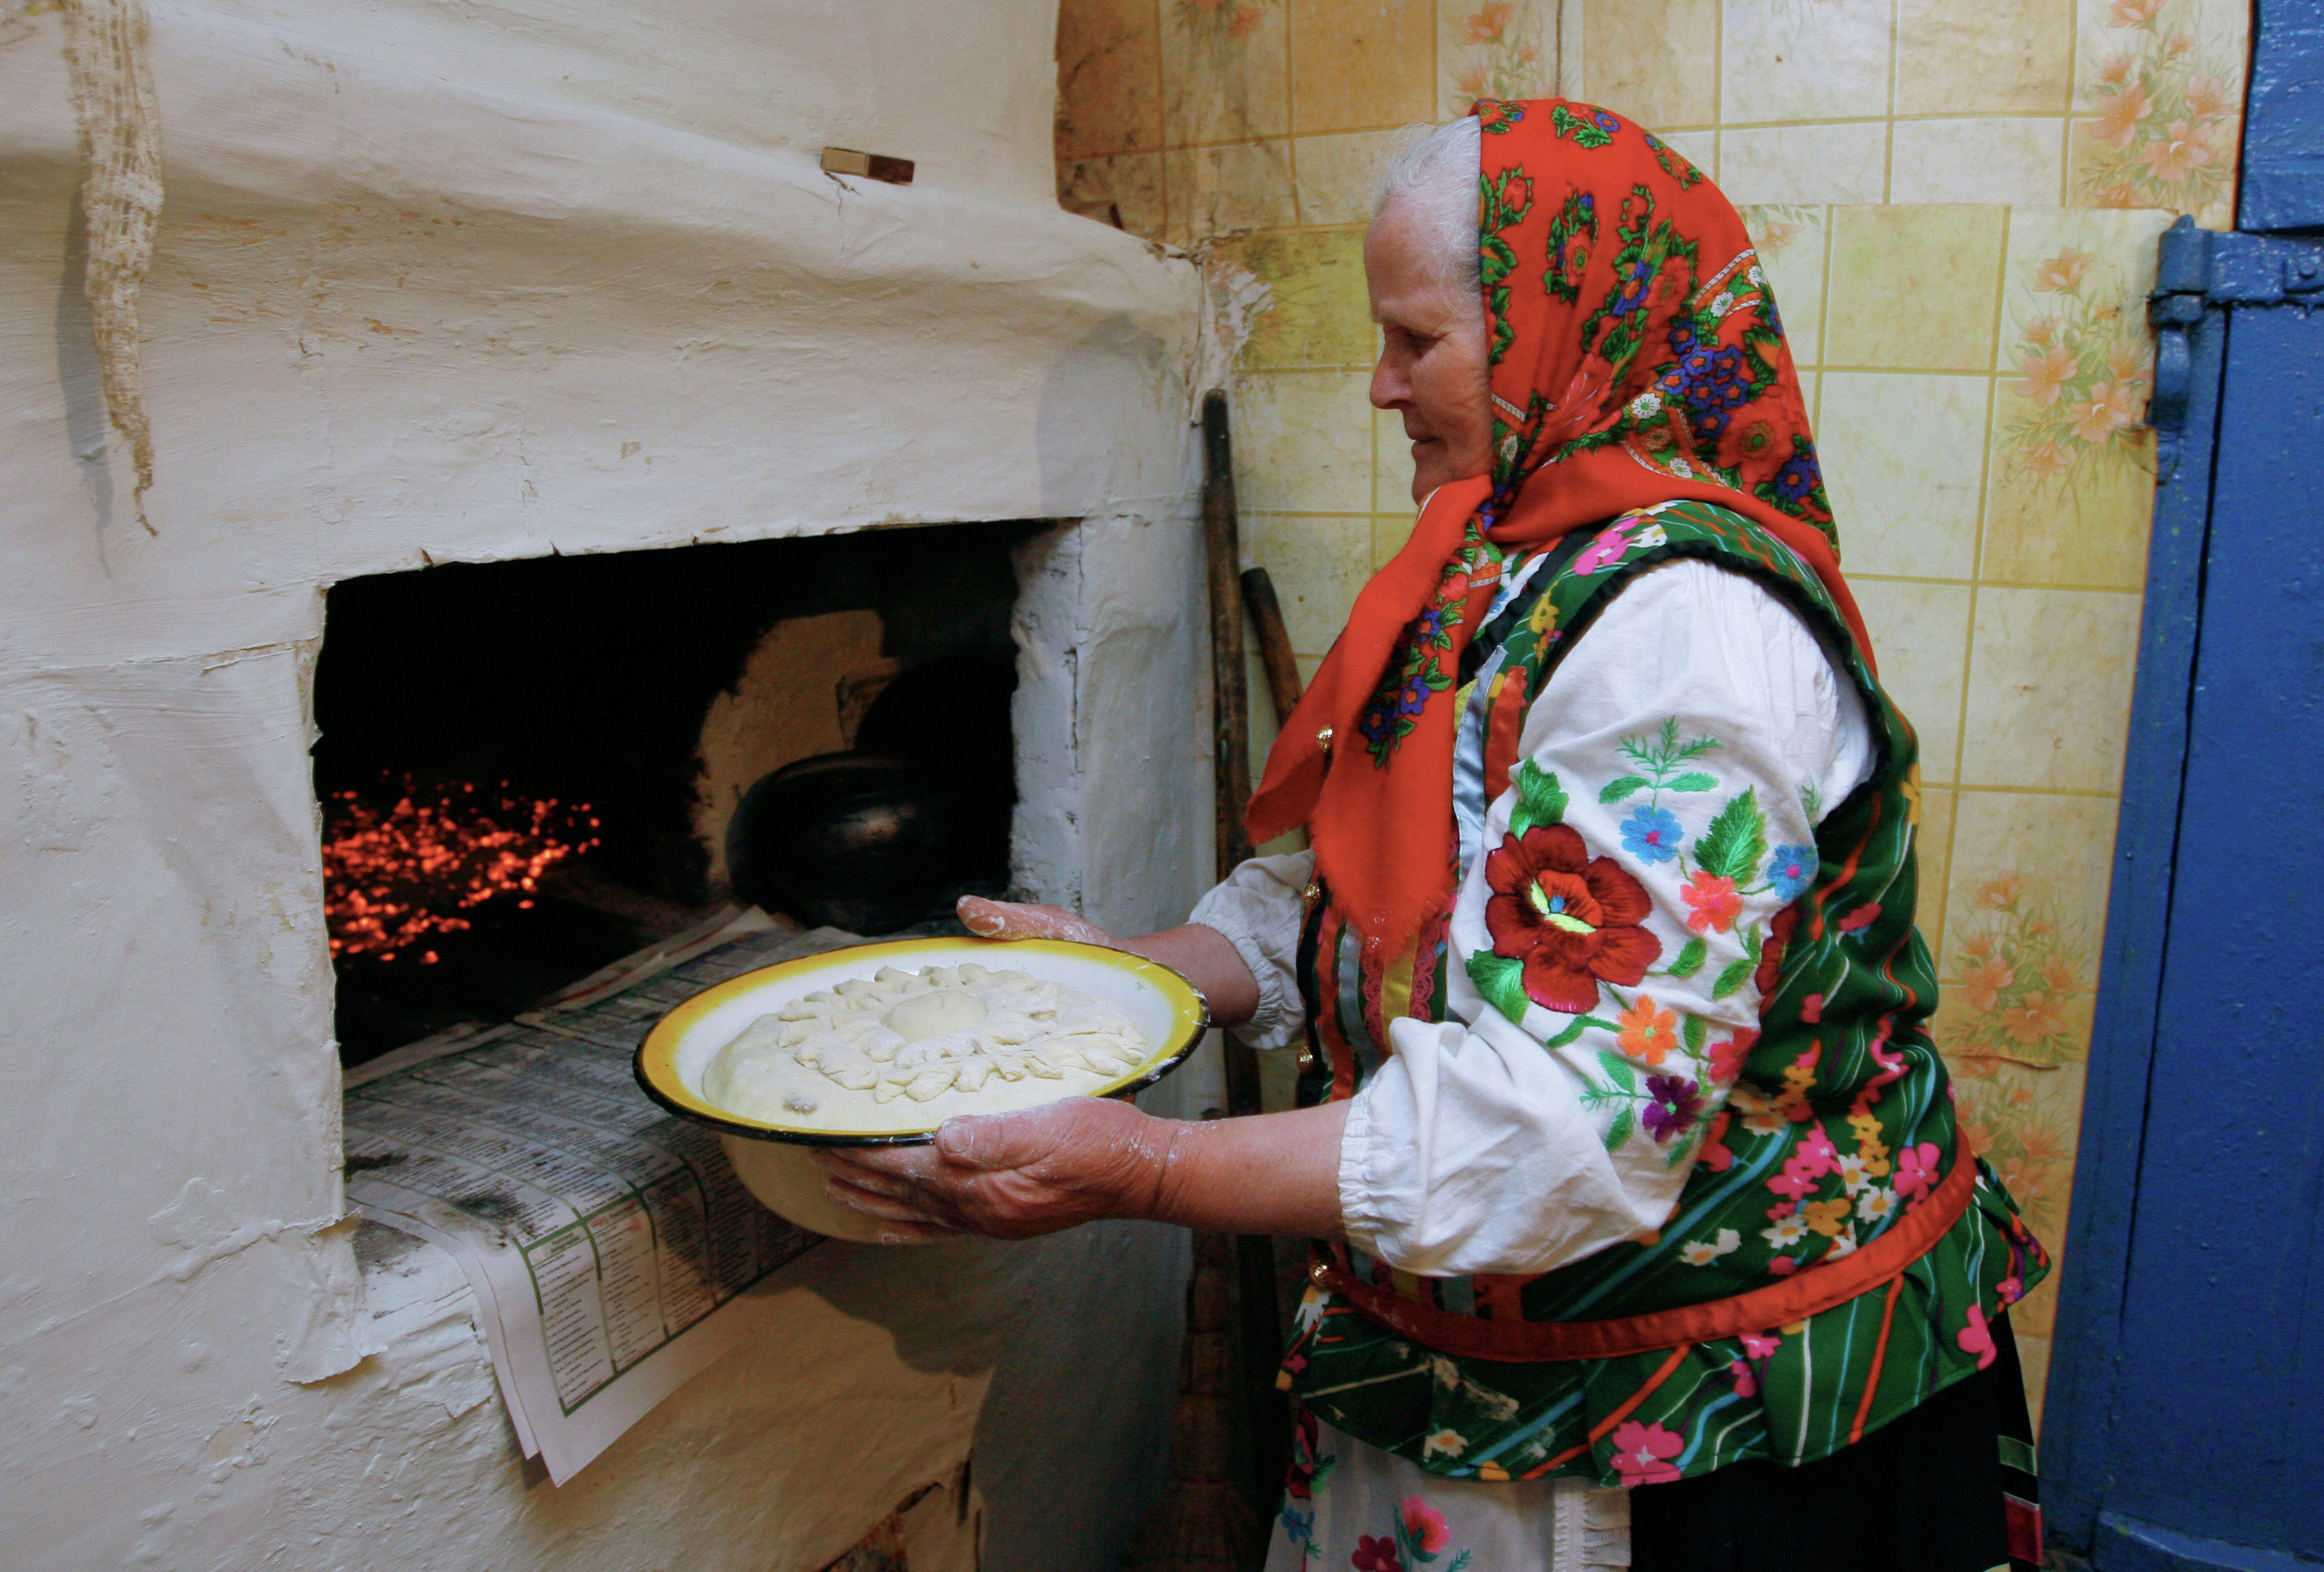 Печена бабка. Бабушка печет пироги. Бабушка печет хлеб в деревне. Русская печь с пирогами. Бабушка печет хлеб деревенская.